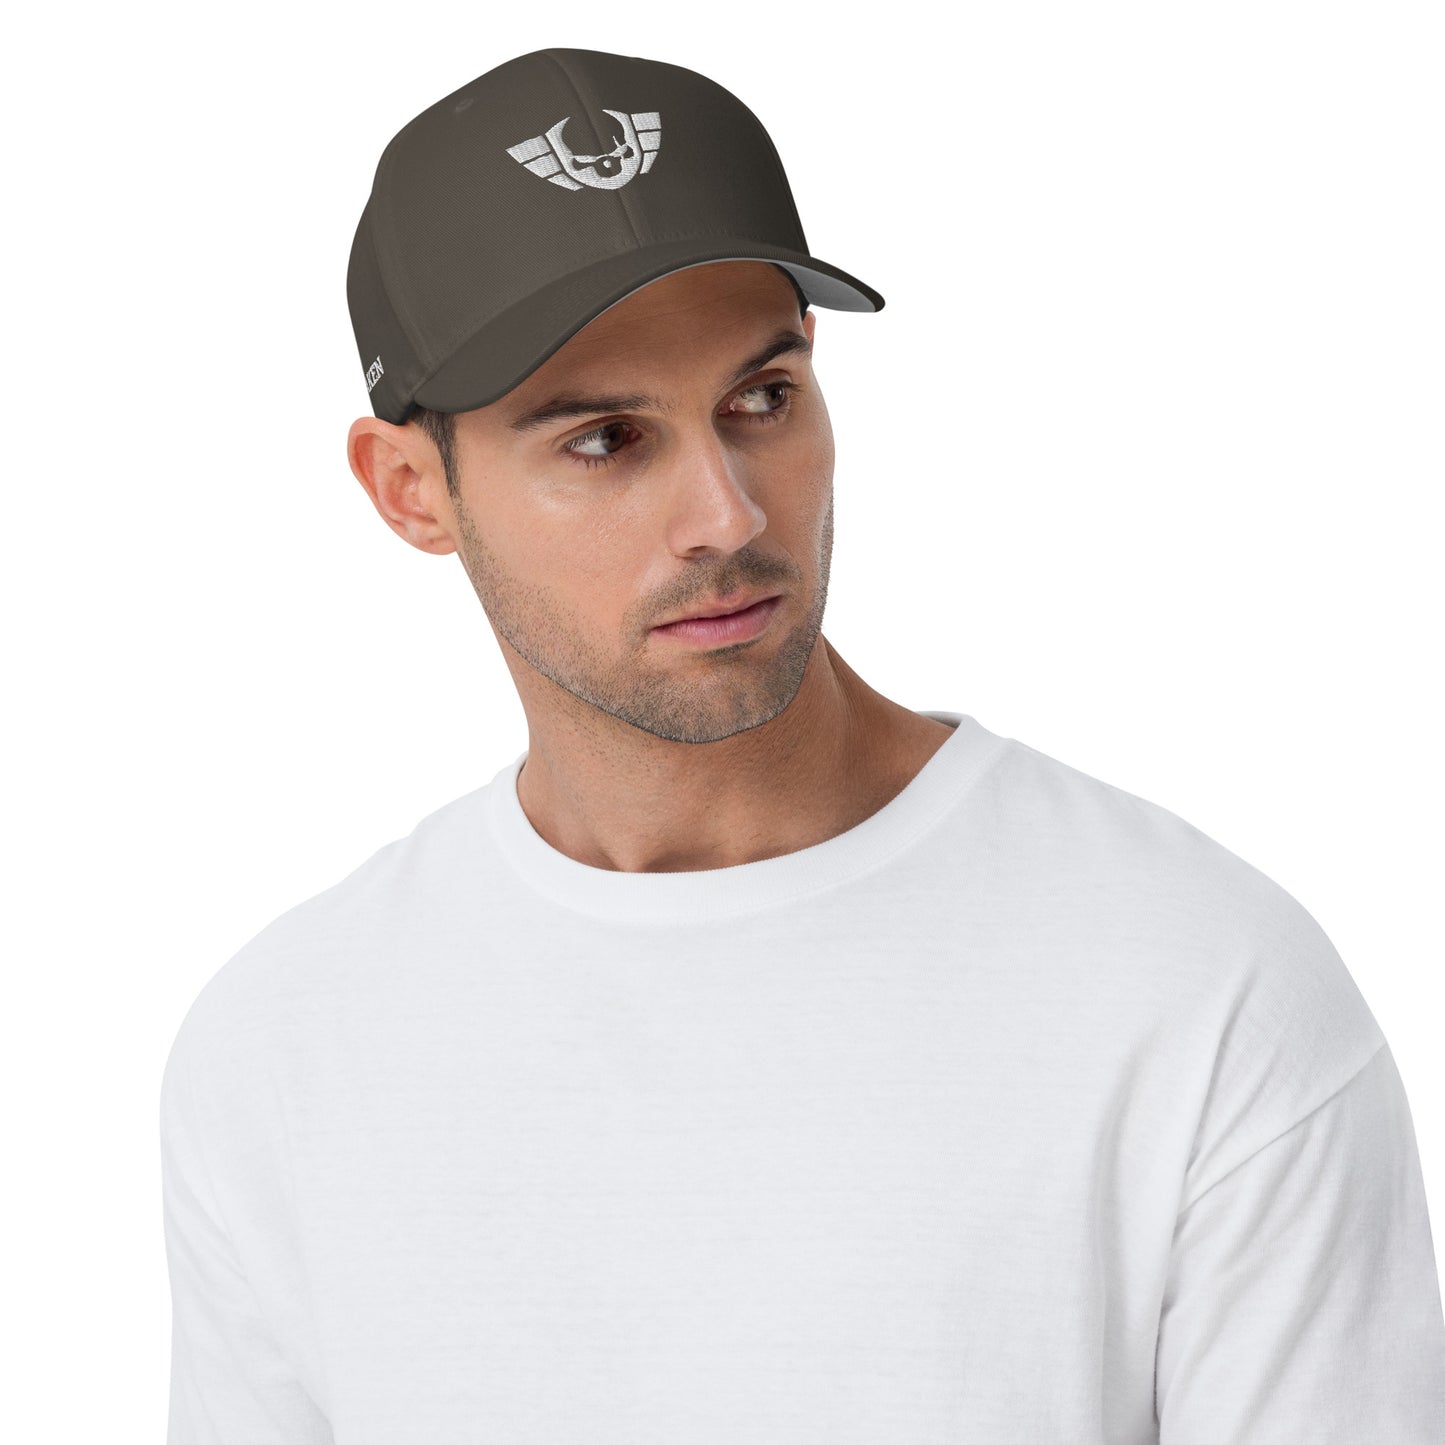 Unisex Warsaken® Hat : Flexfit : Logo : Grey